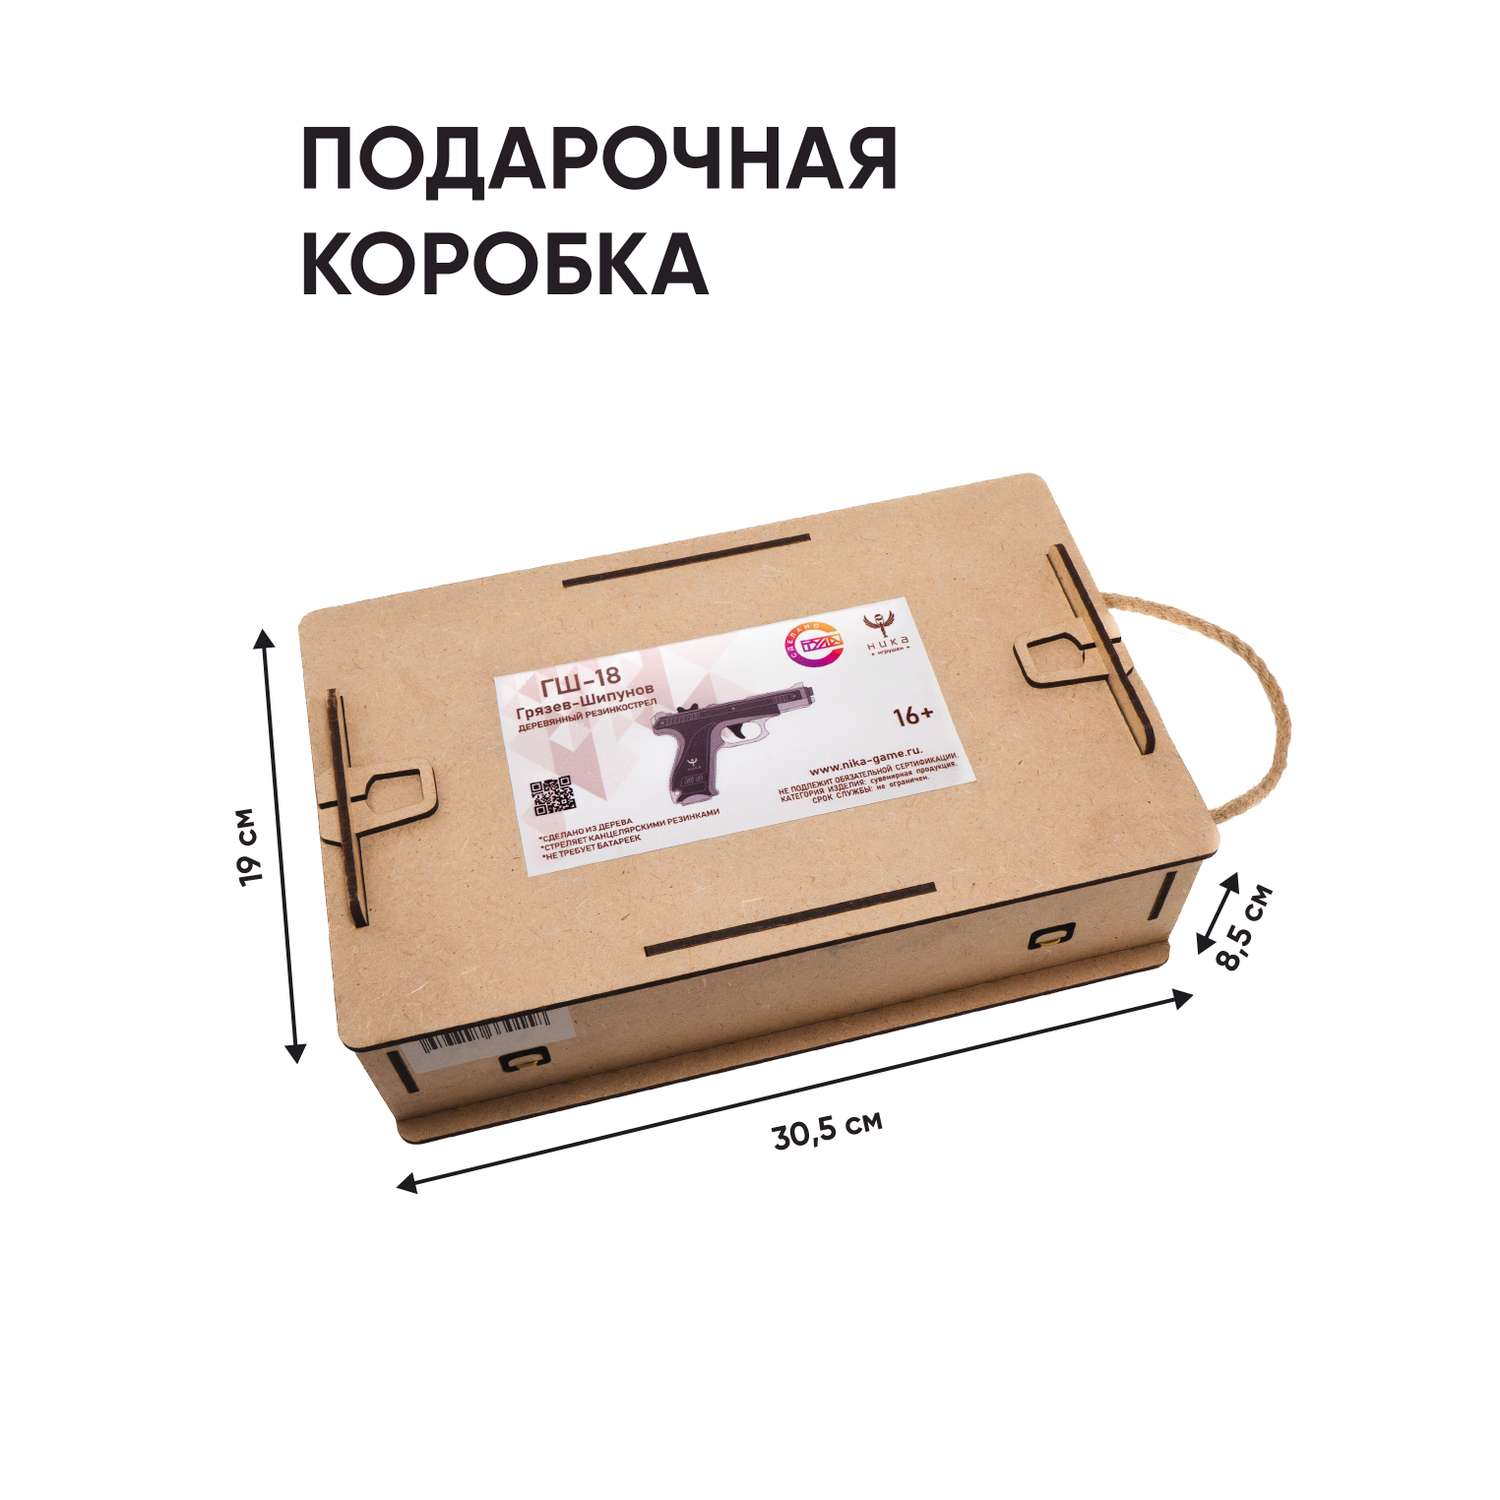 Резинкострел НИКА игрушки Пистолет ГШ-18 в подарочной упаковке - фото 5